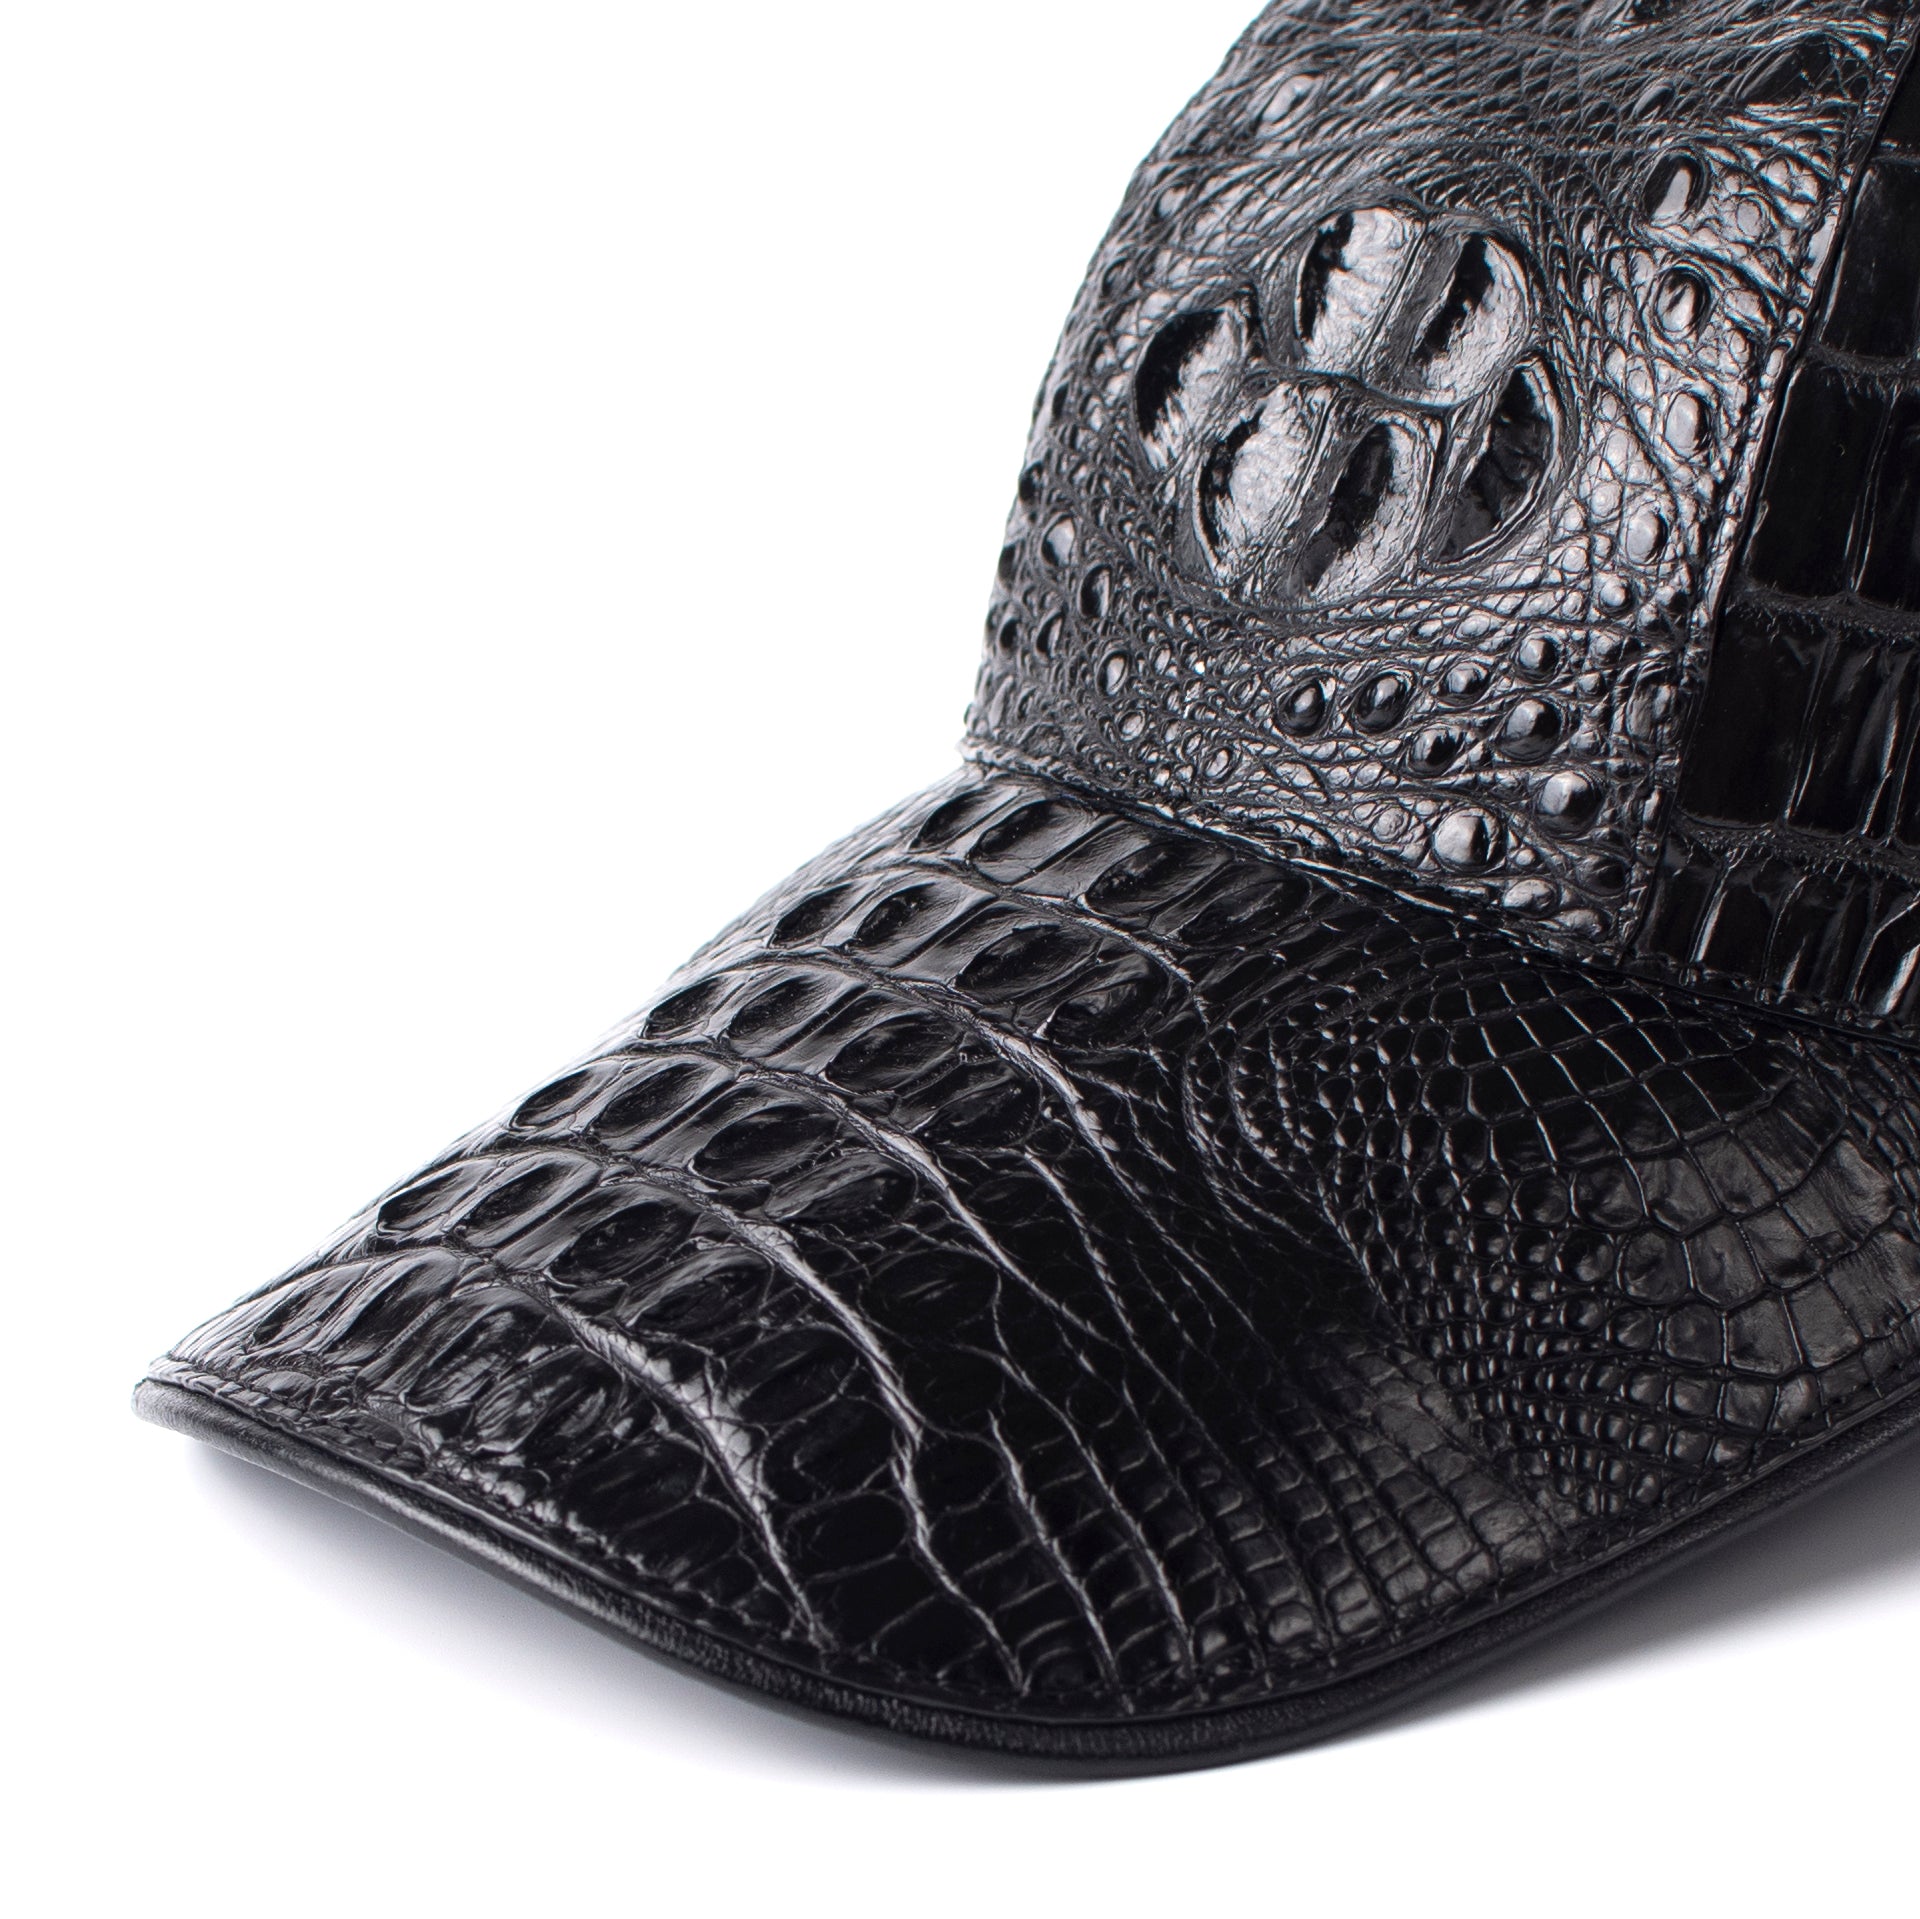 Black Genuine Alligator Crocodile Leather hat handmade Adjustable hat Cap